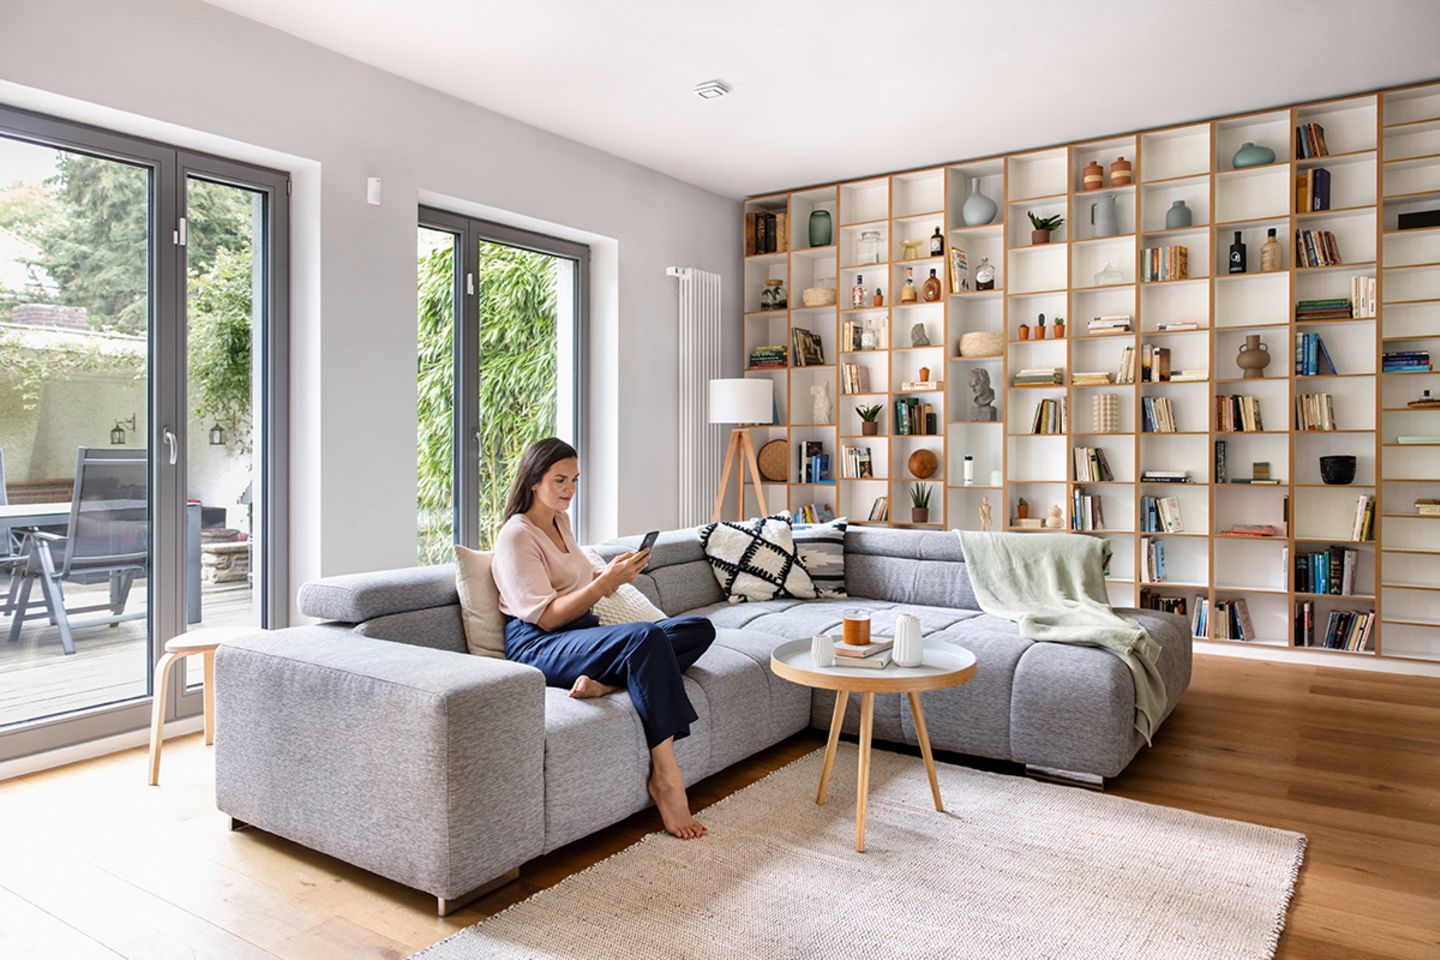 IN KOOPERATION MIT ROBERT BOSCH SMART HOME: Smart Home Starter-Paket von Bosch zu gewinnen